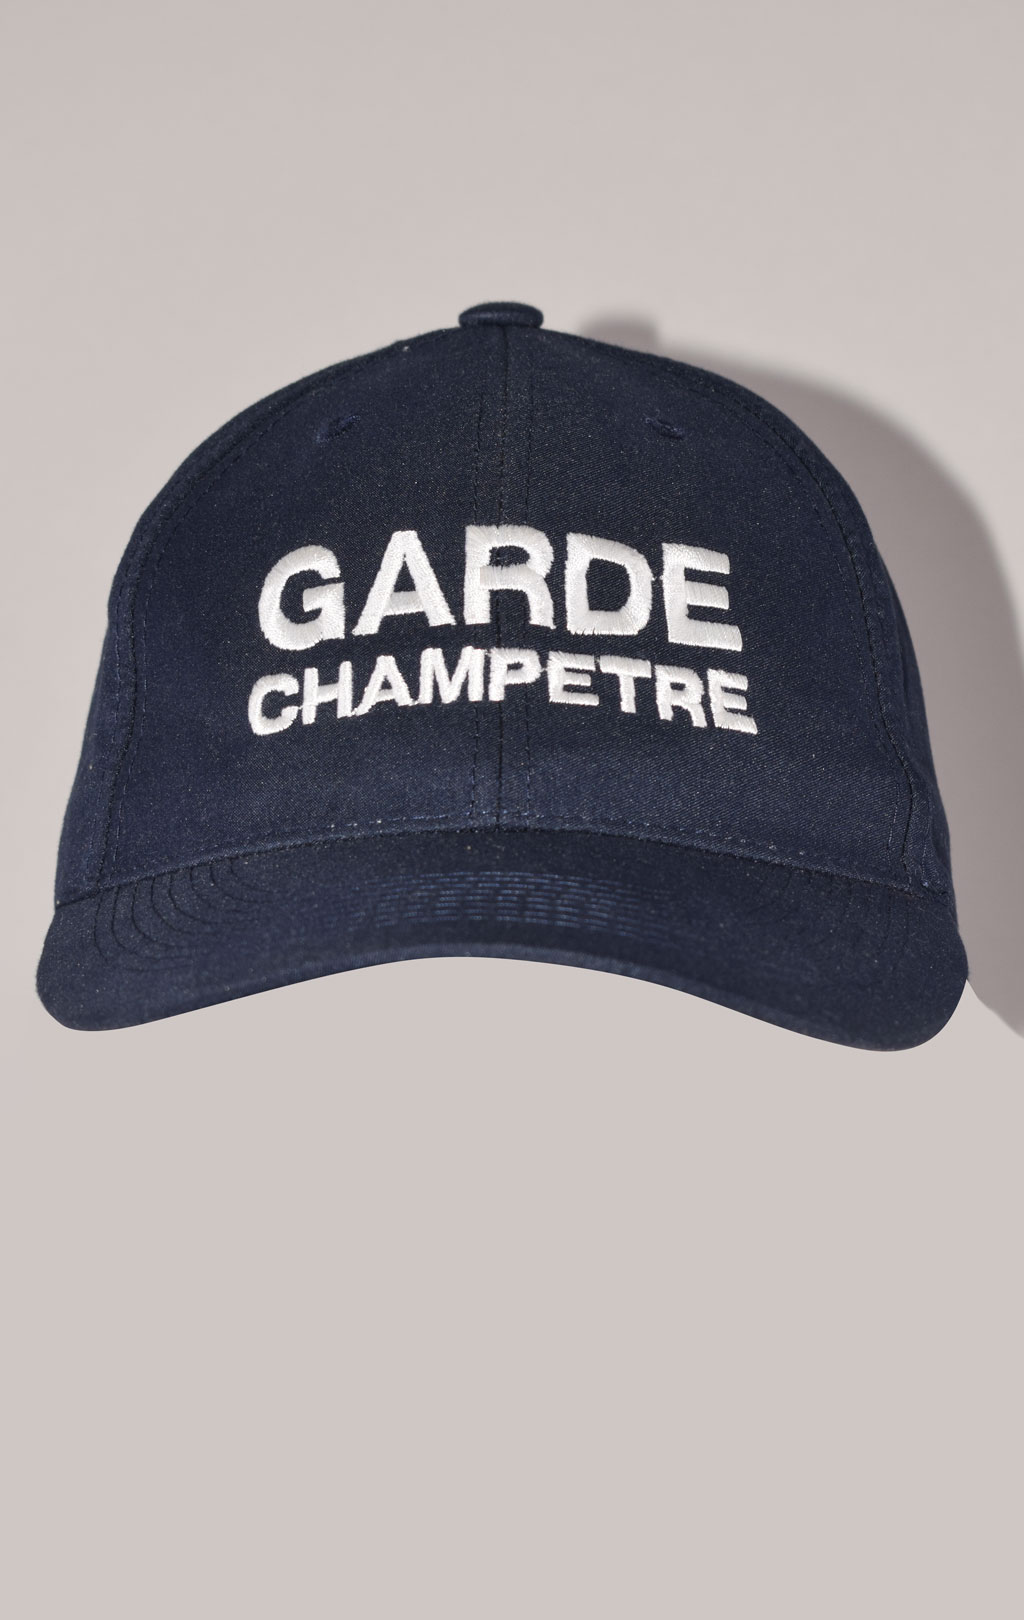 Бейсболка GARDE CHAMPETRE navy Франция